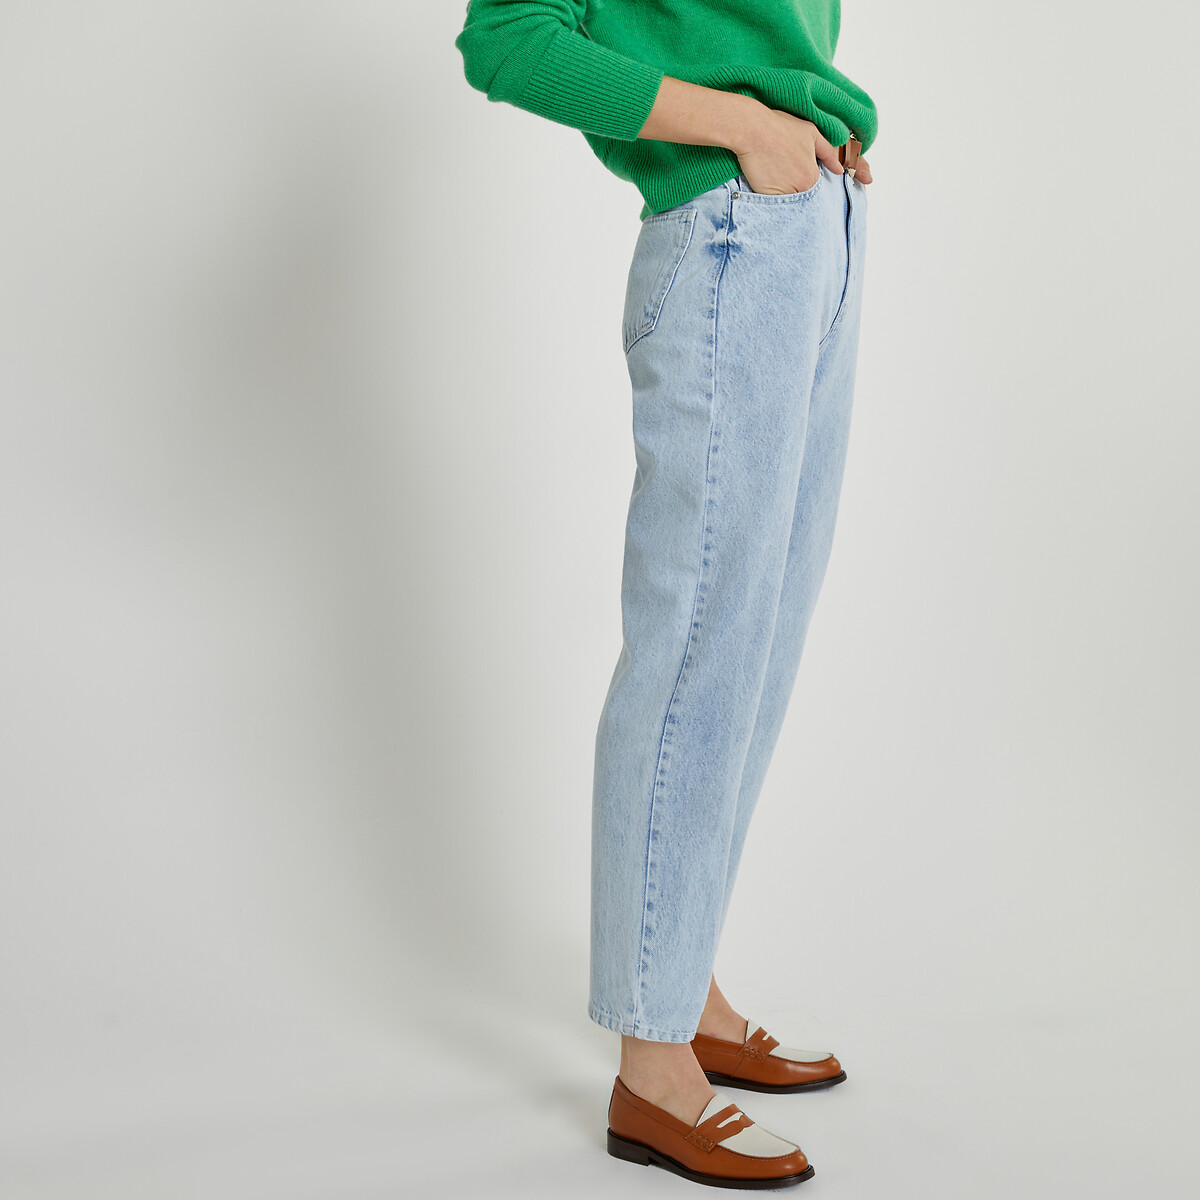 Preços baixos em ASOS Jeans Tamanho Regular para mulheres